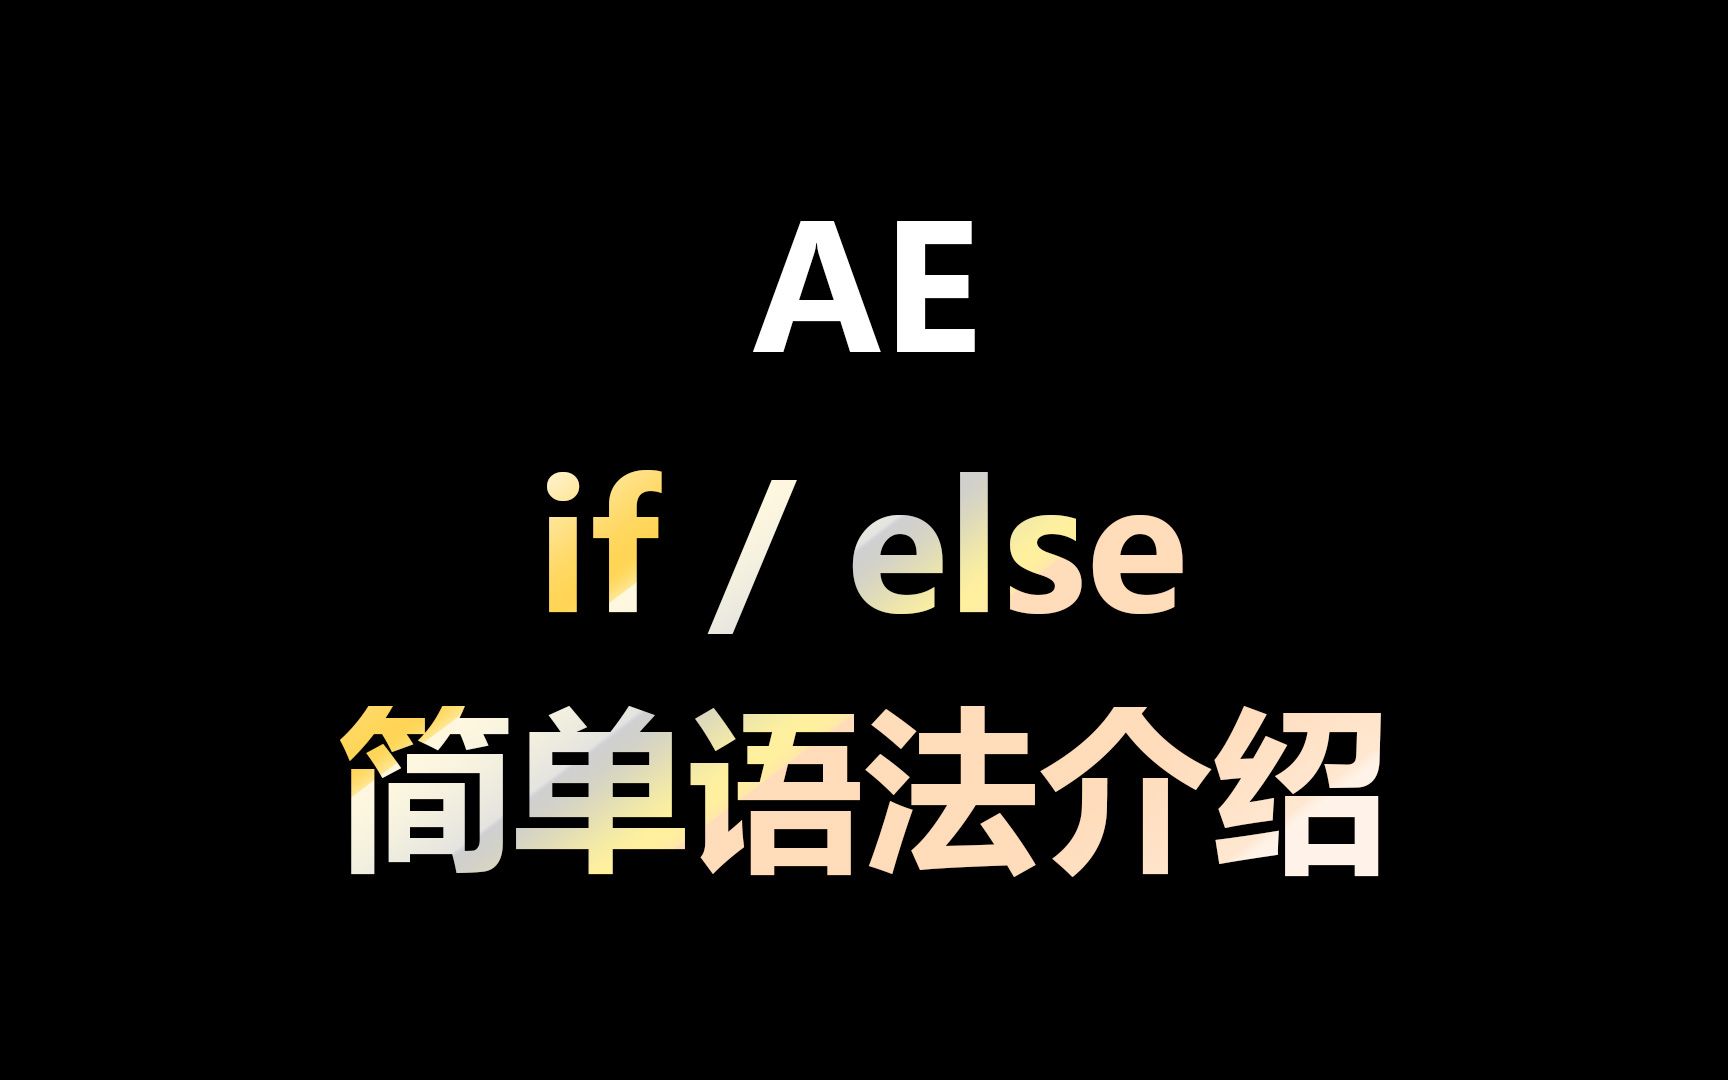 AE表达式教程 if / else 简单语法制作案例介绍 用法